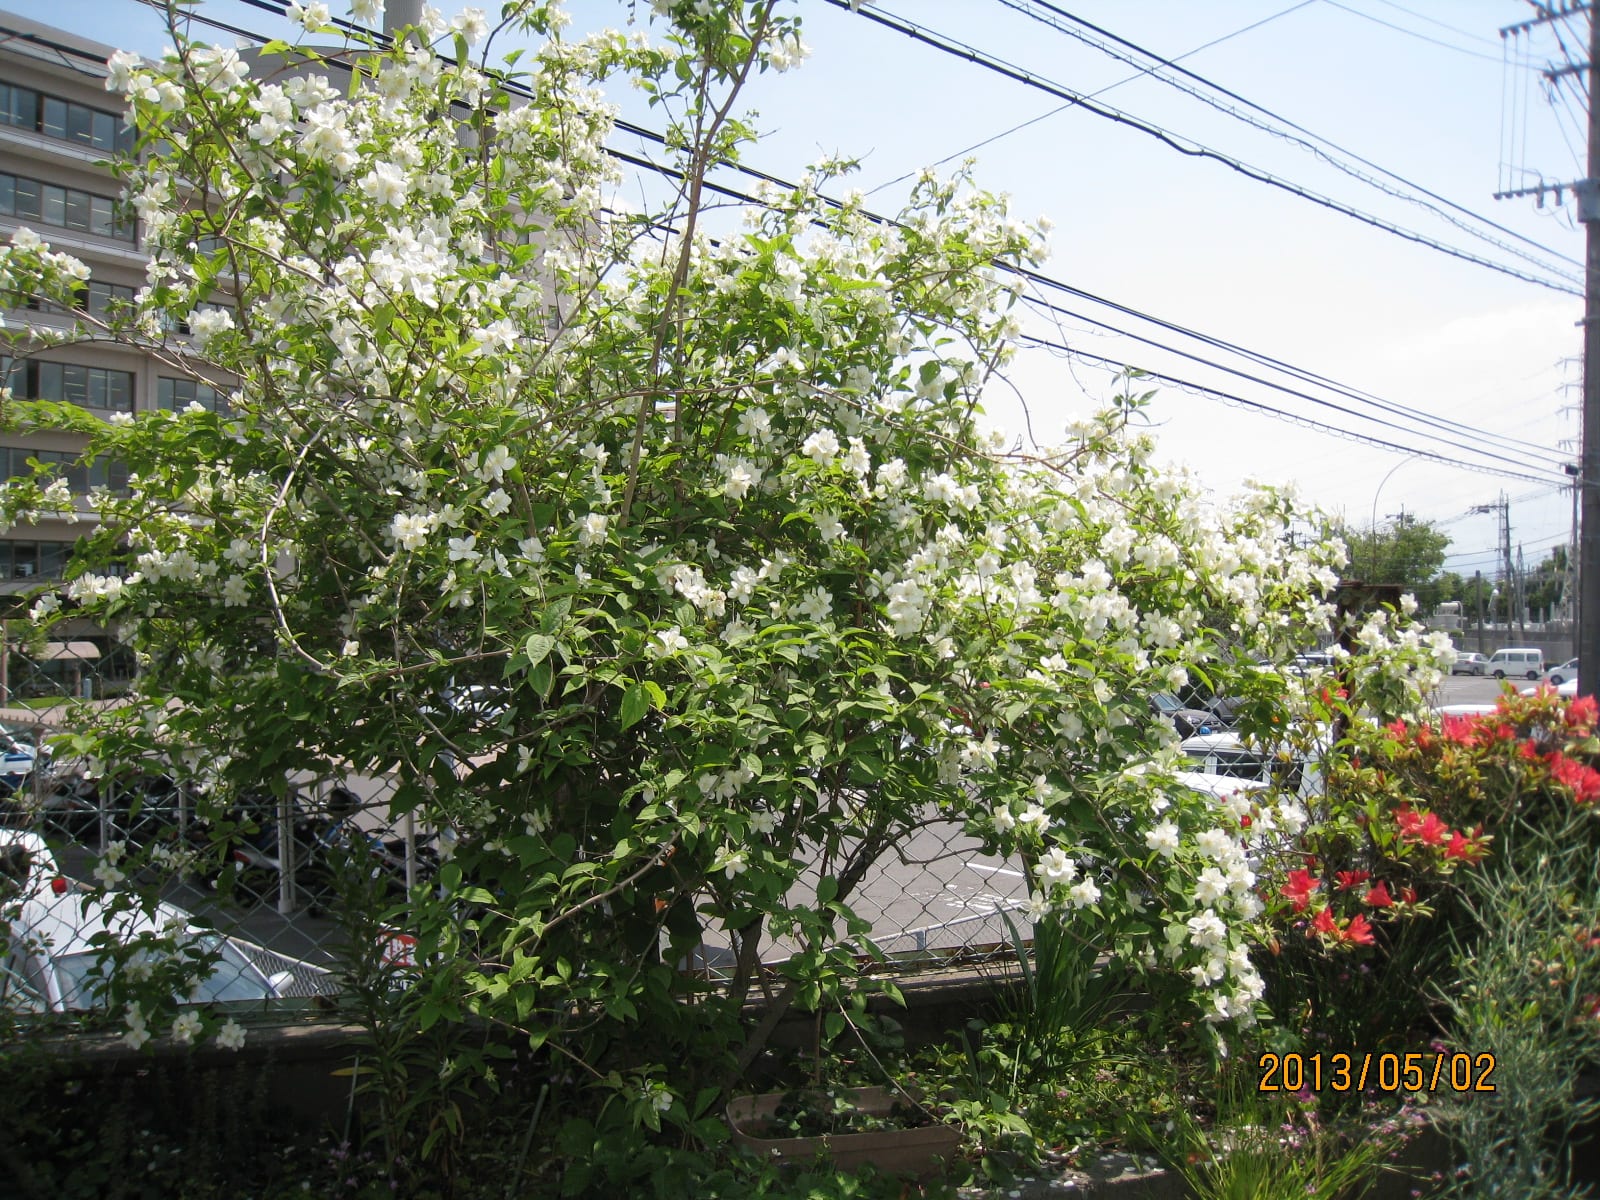 卯の花の におう垣根に はがき随筆 鹿児島